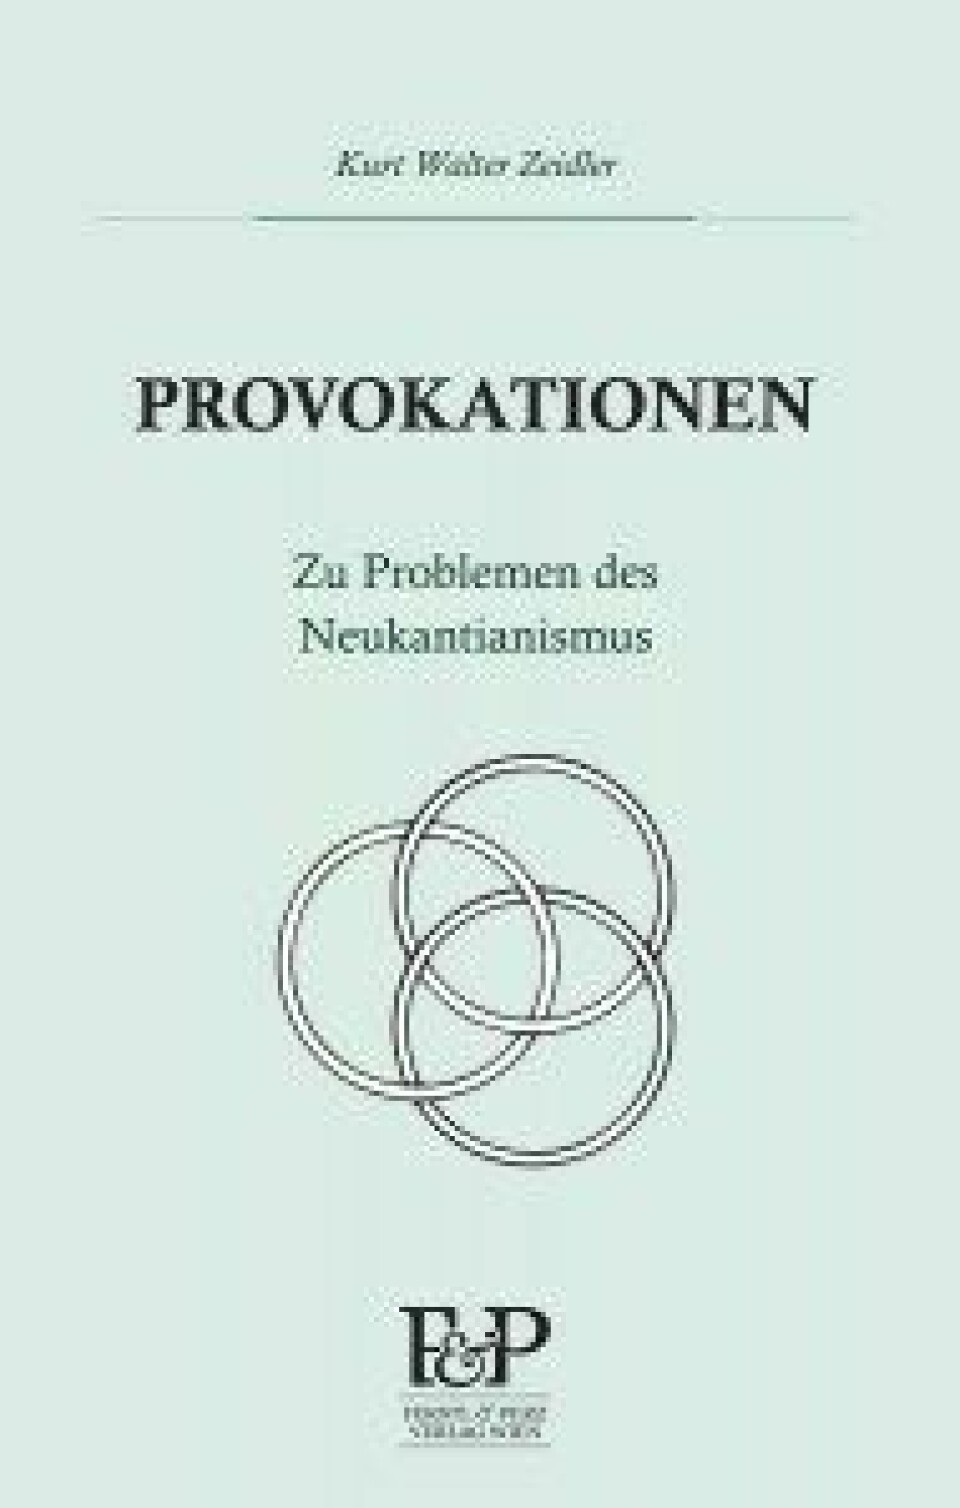 Provokationen. Zu Problemen des Neukantianismus av Kurt Walter Zeidler. Ferstl & Perz 2018.